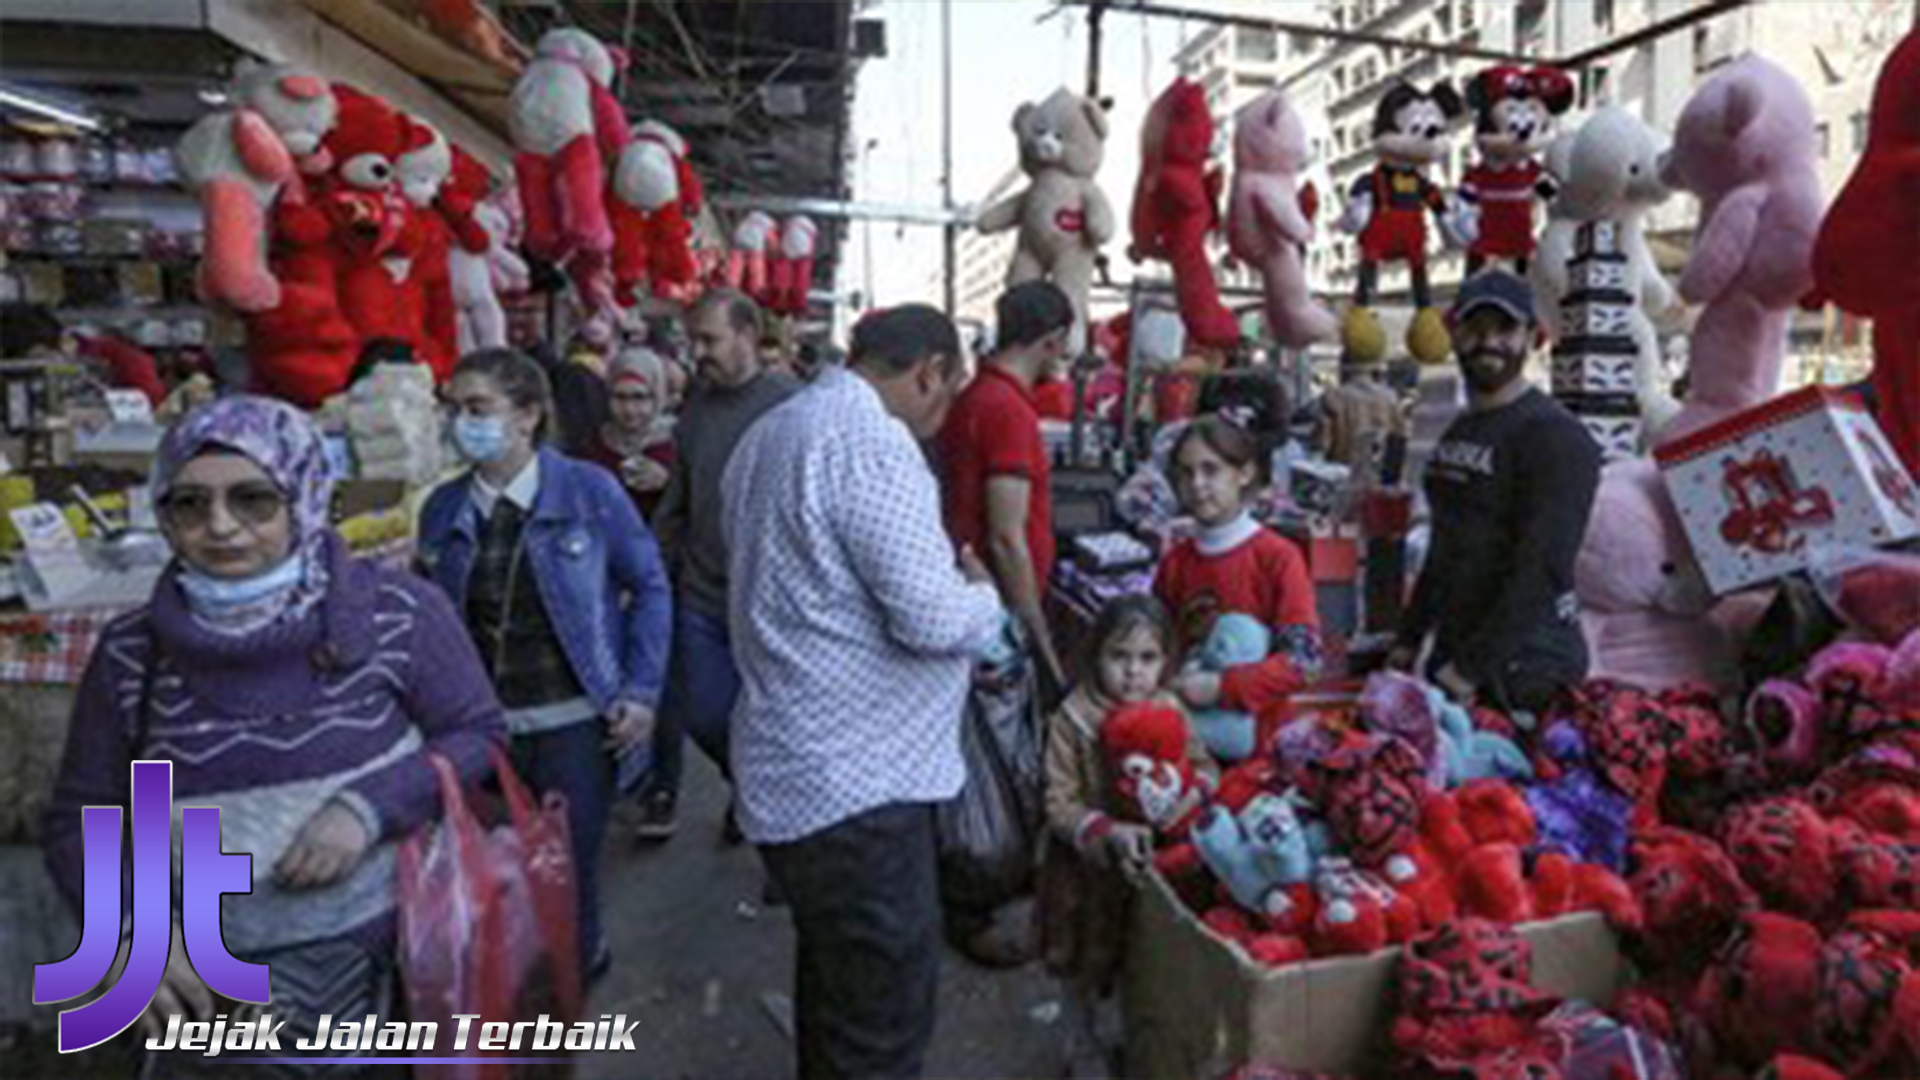 Belanja Unik dan Tradisional di Pasar Irak